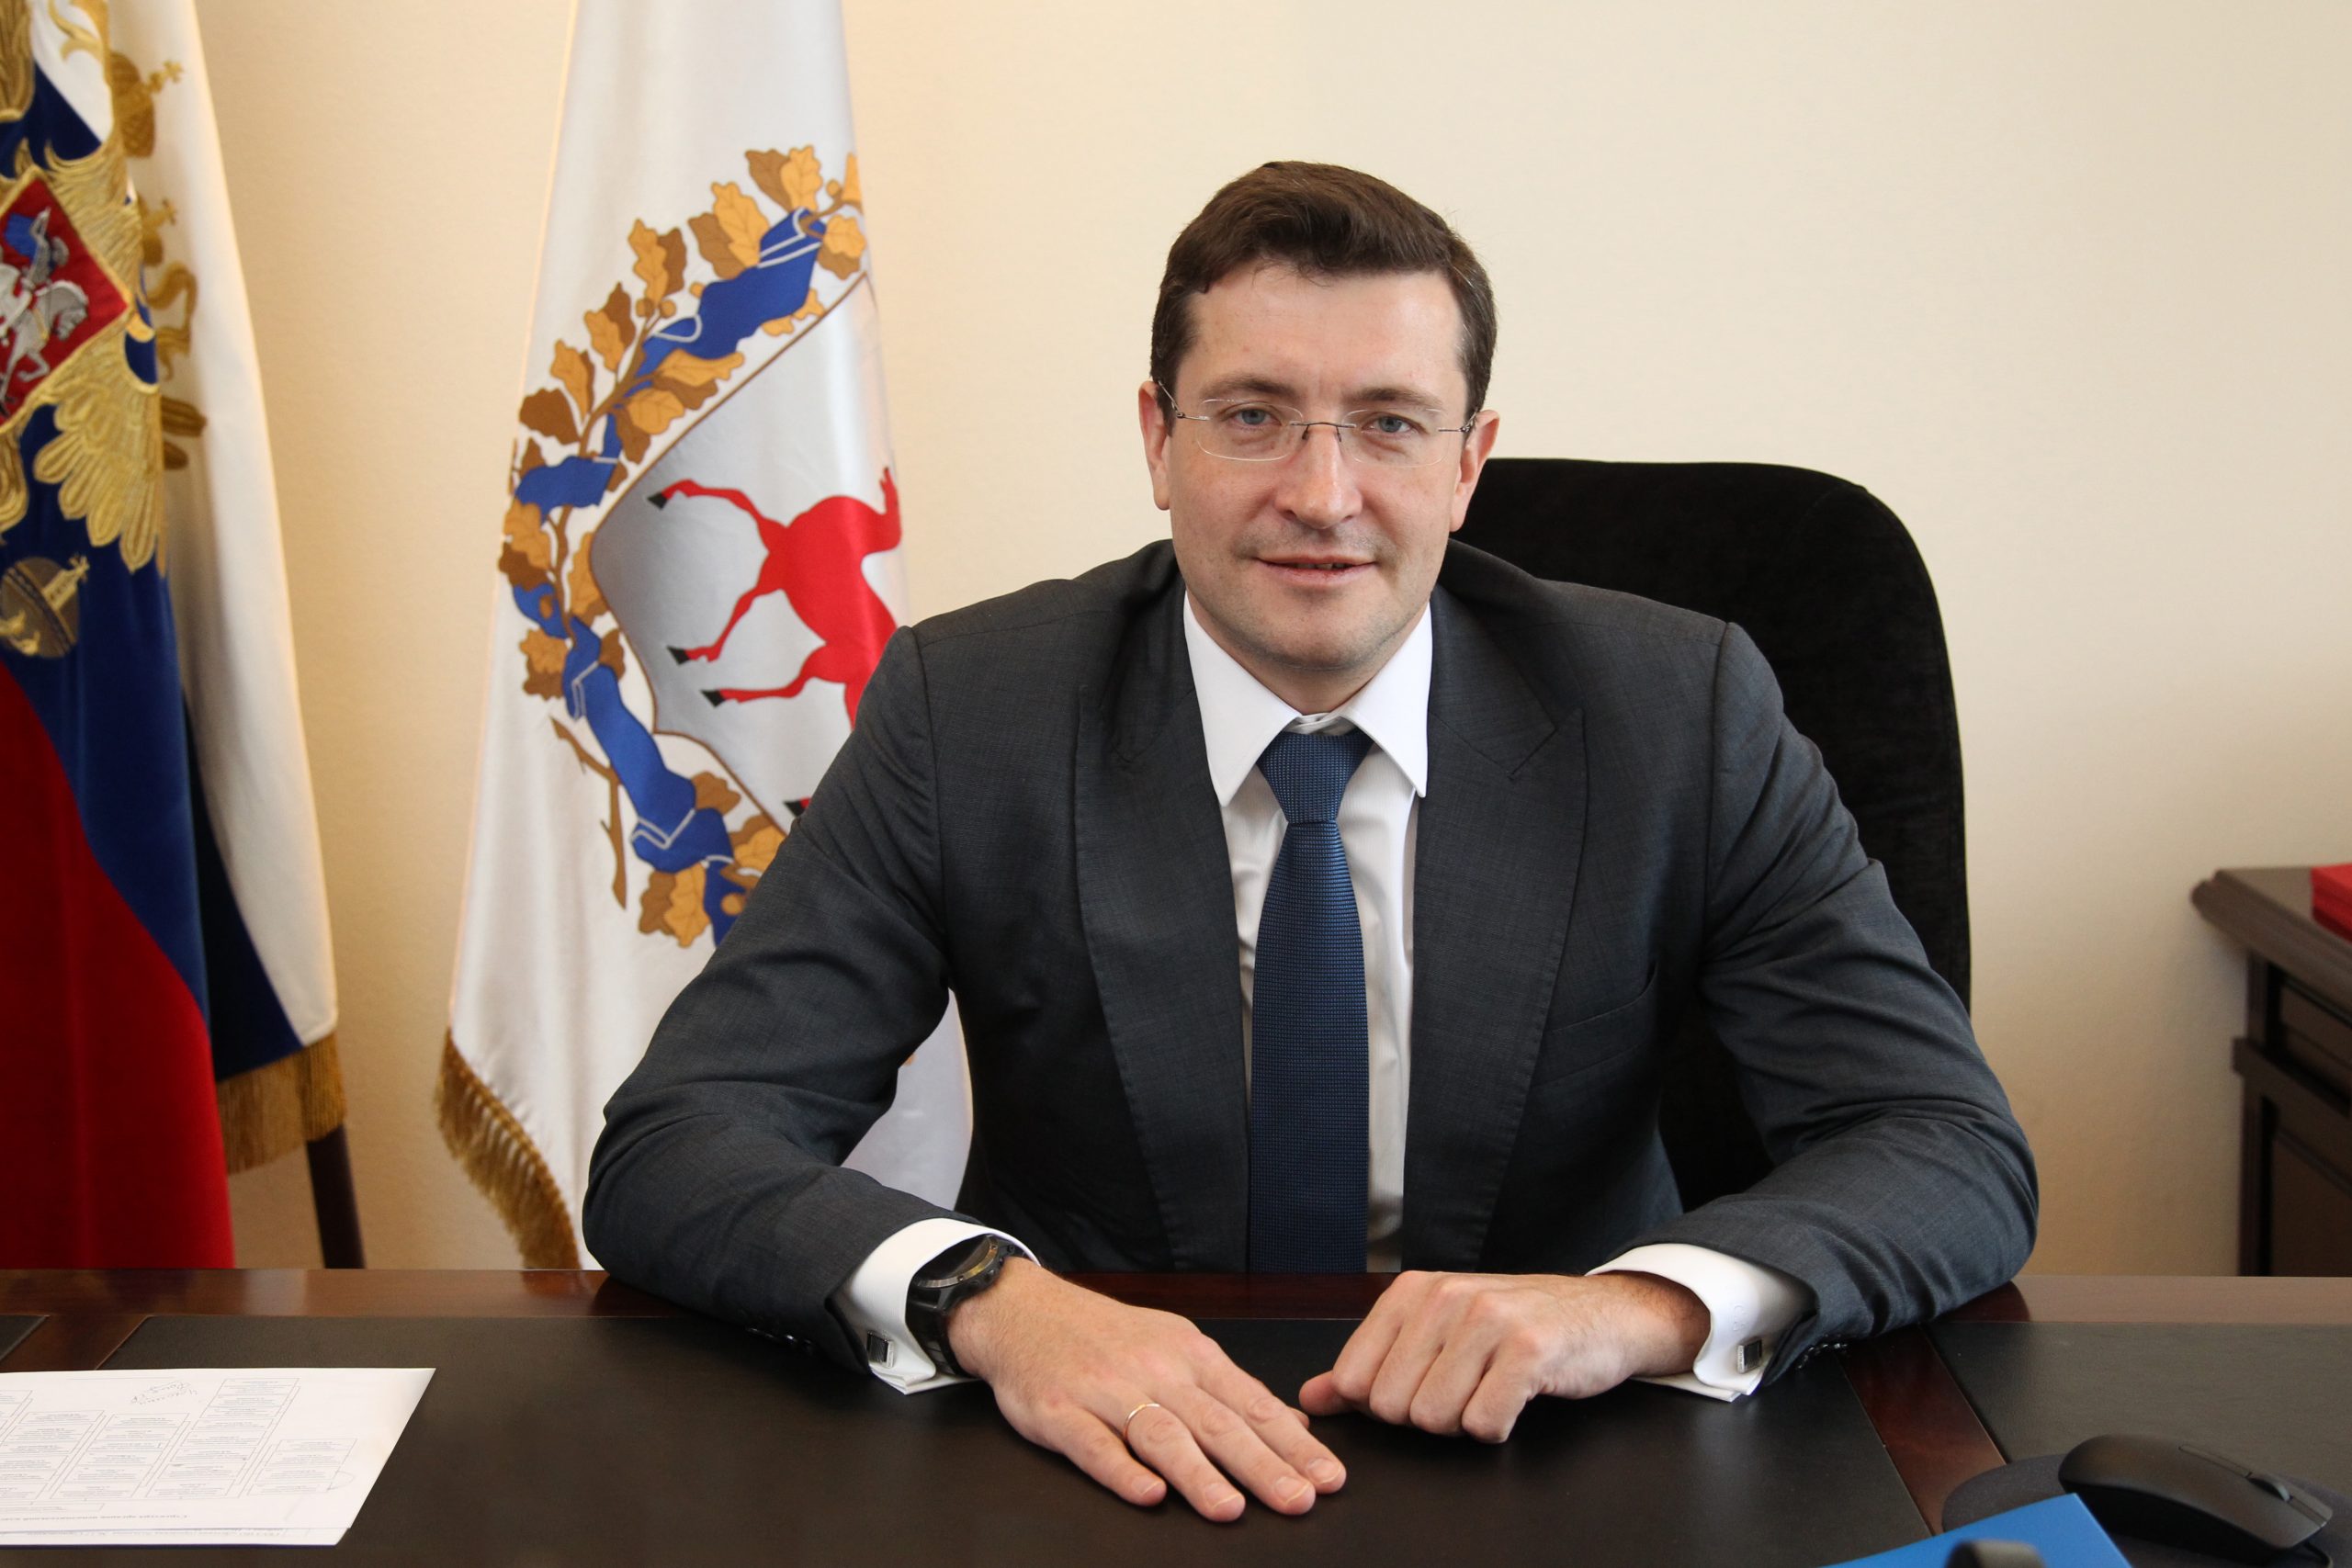 губернатор нижегородской области фото